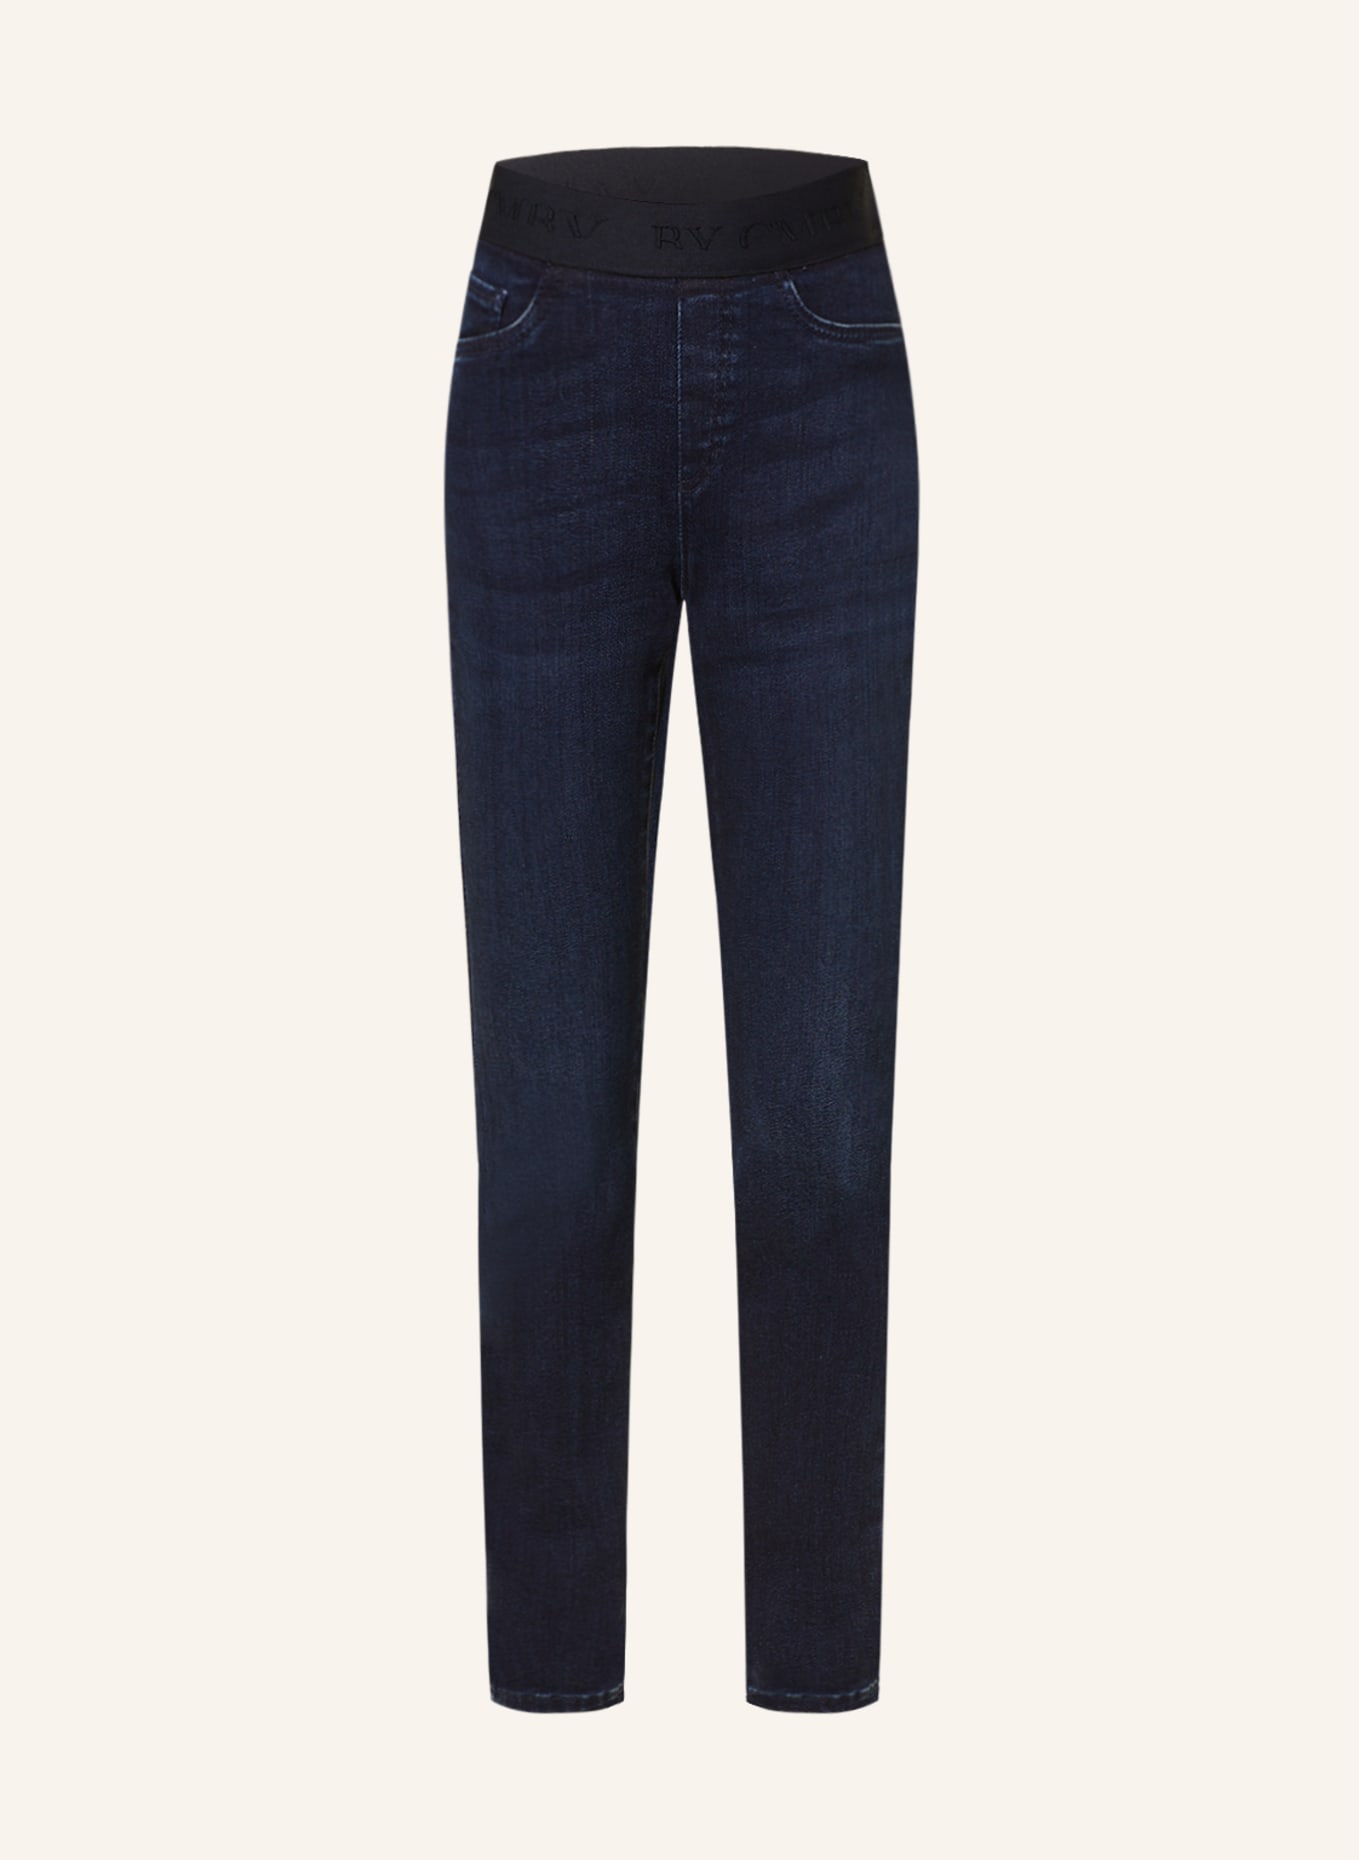 CAMBIO Legginsy PHILIA w stylu jeansowym, Kolor: 5065 dark silent used (Obrazek 1)